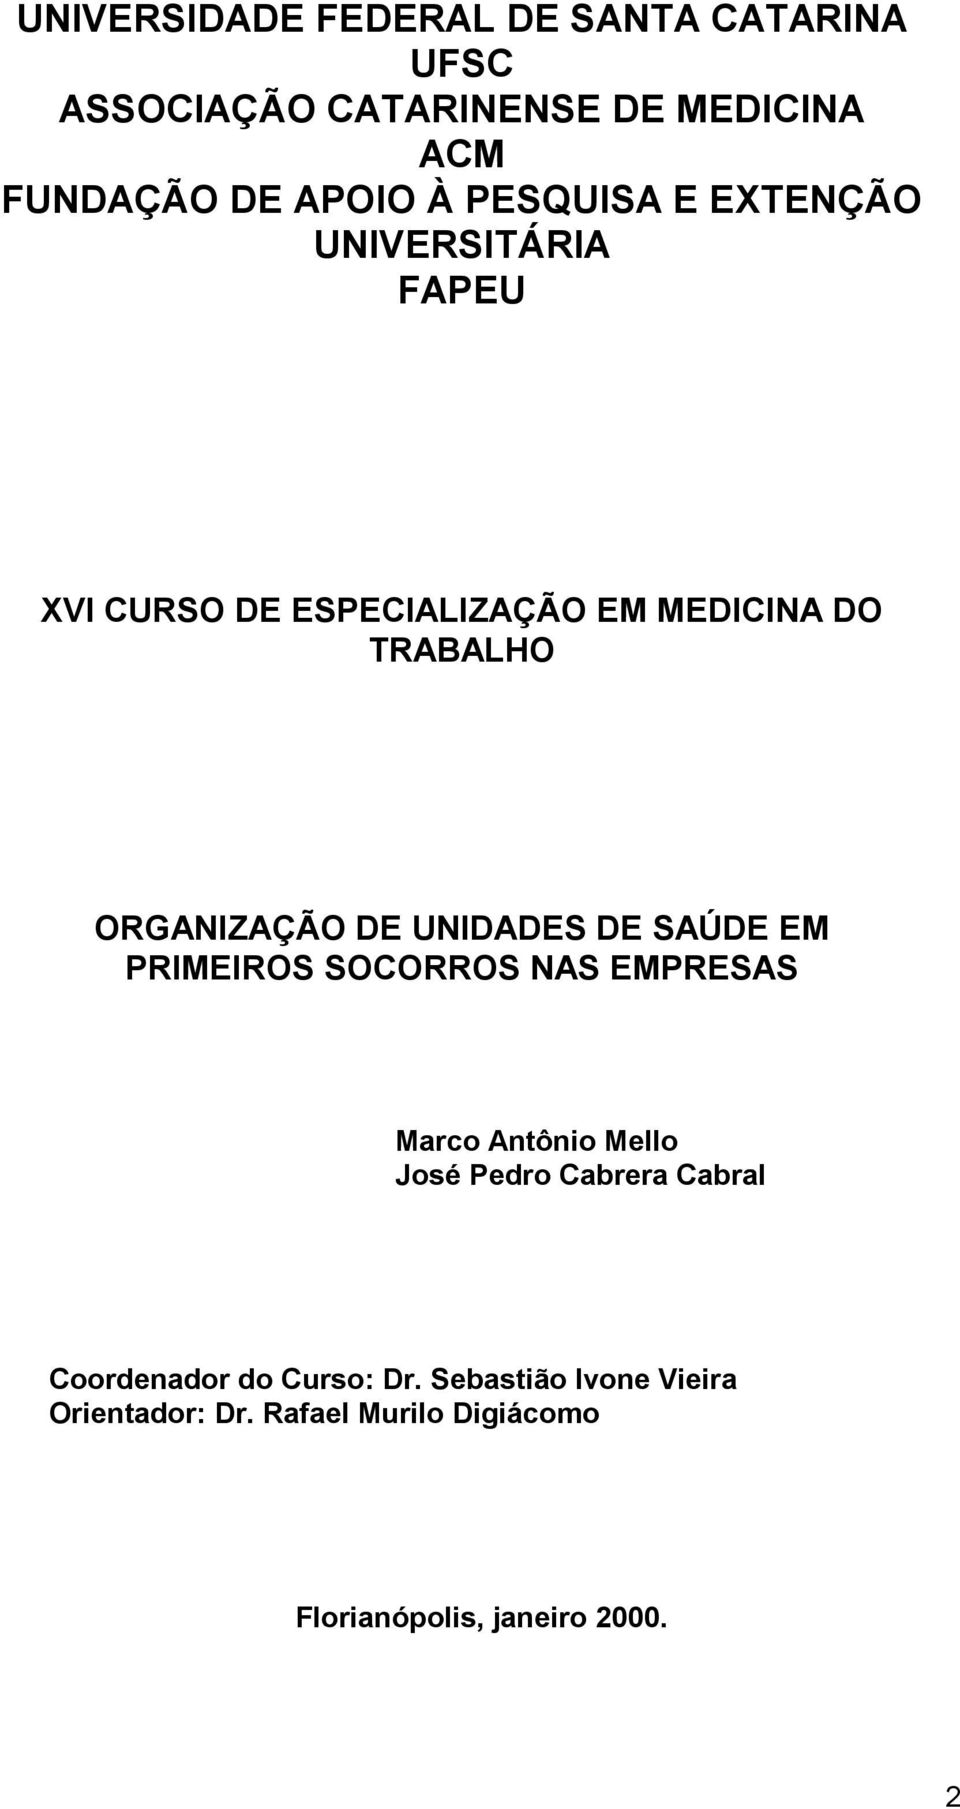 ORGANIZAÇÃO DE UNIDADES DE SAÚDE EM PRIMEIROS SOCORROS NAS EMPRESAS Mrco Antônio Mello José Pedro